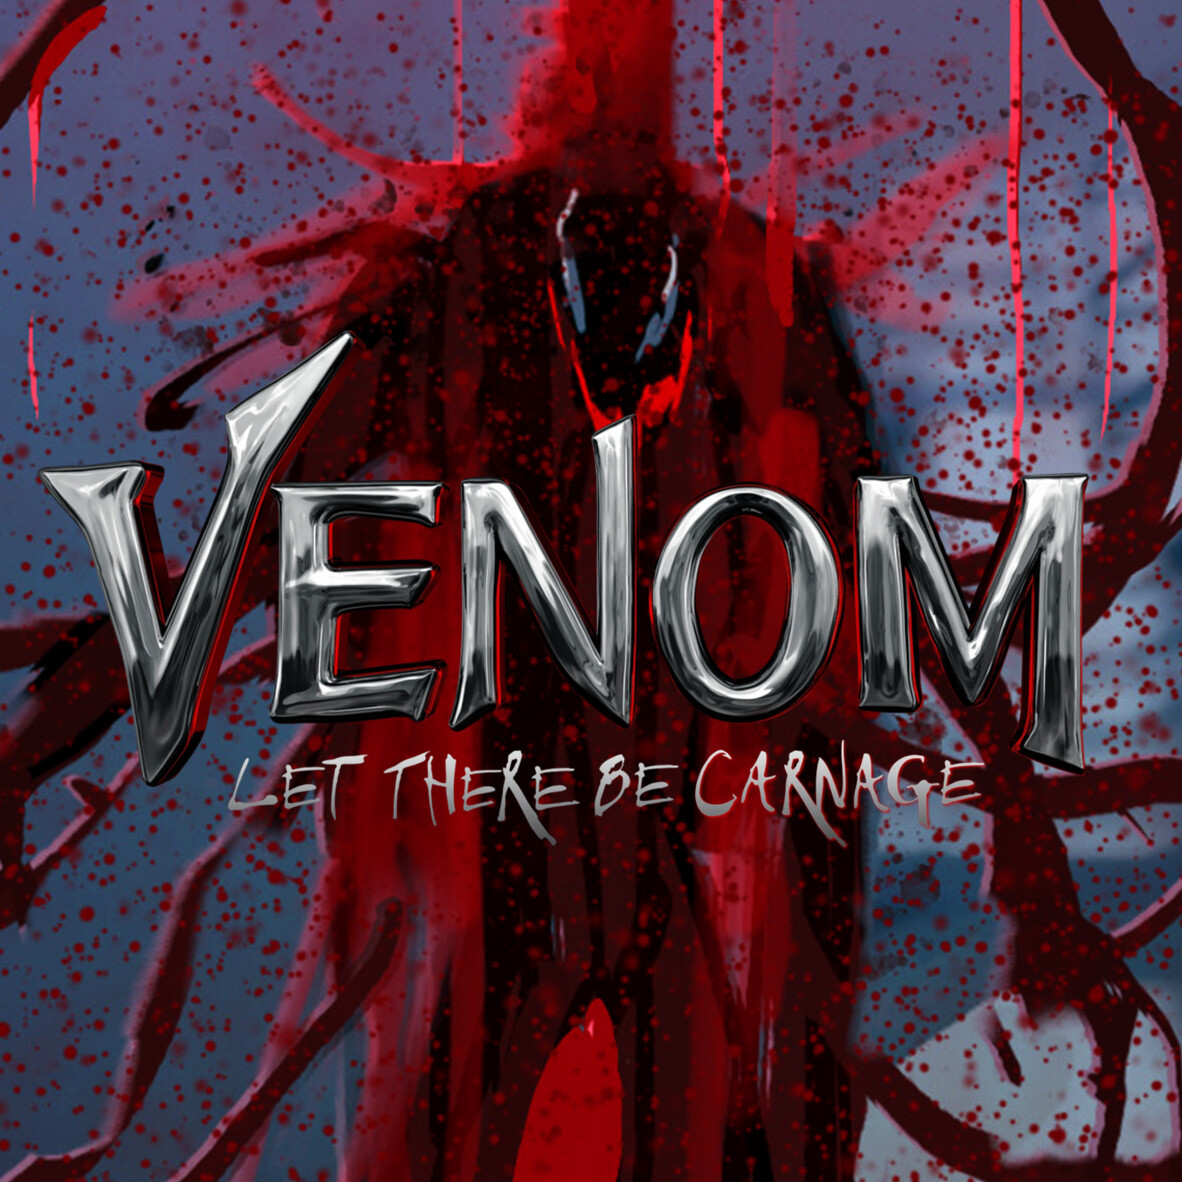 Venom, Let There be Carnage: Prison Break